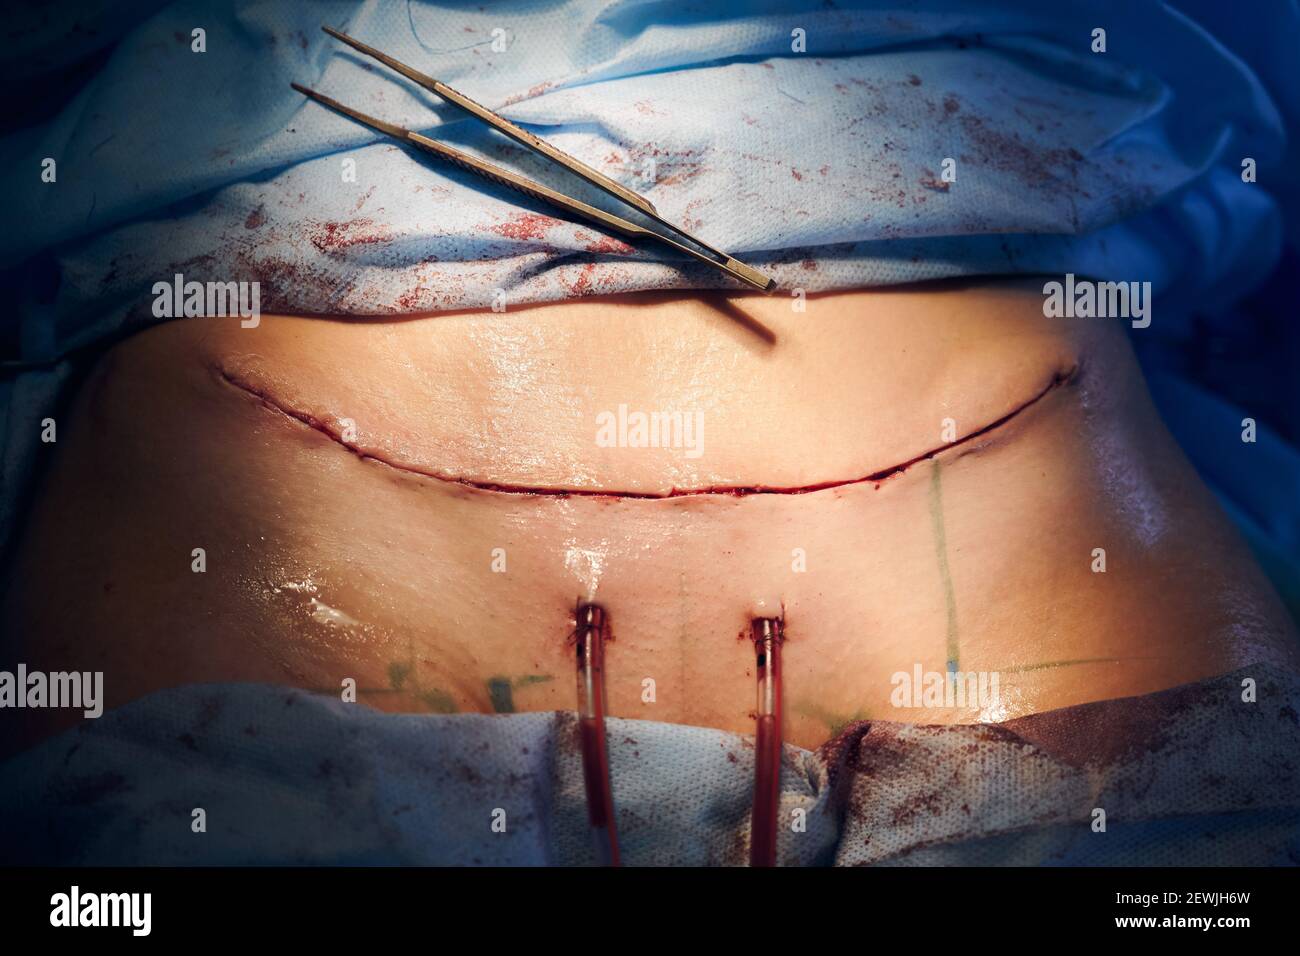 Abdominoplastía (Cirugía Estética del Abdomen) - Kelamis Plastic